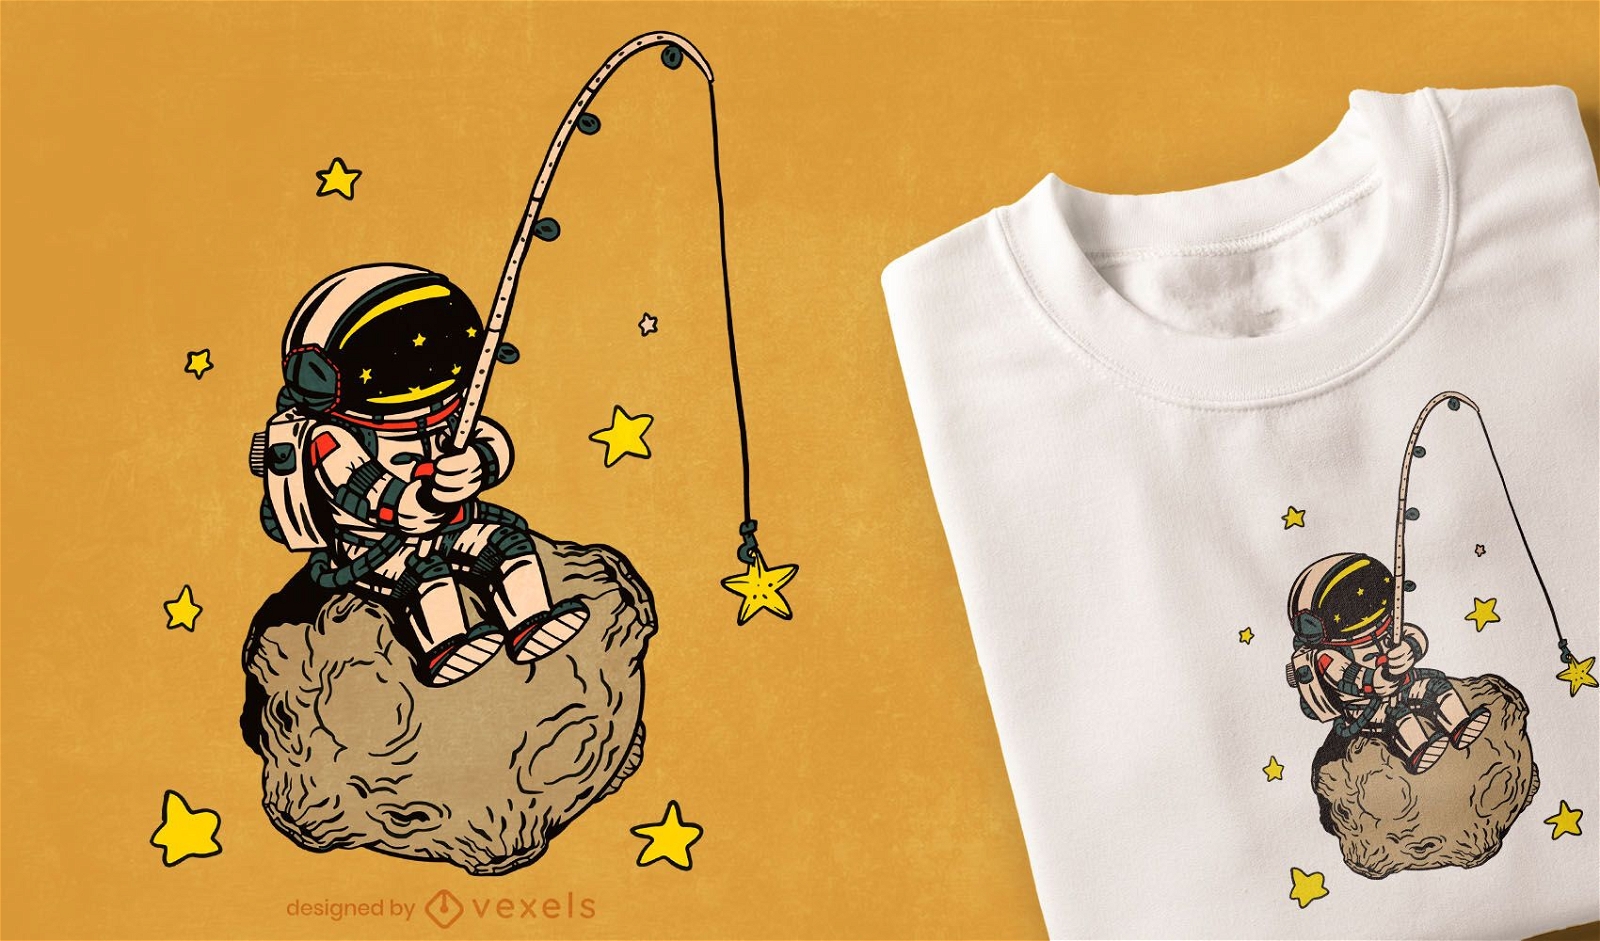 Dise?o de camiseta de pesca astronauta.